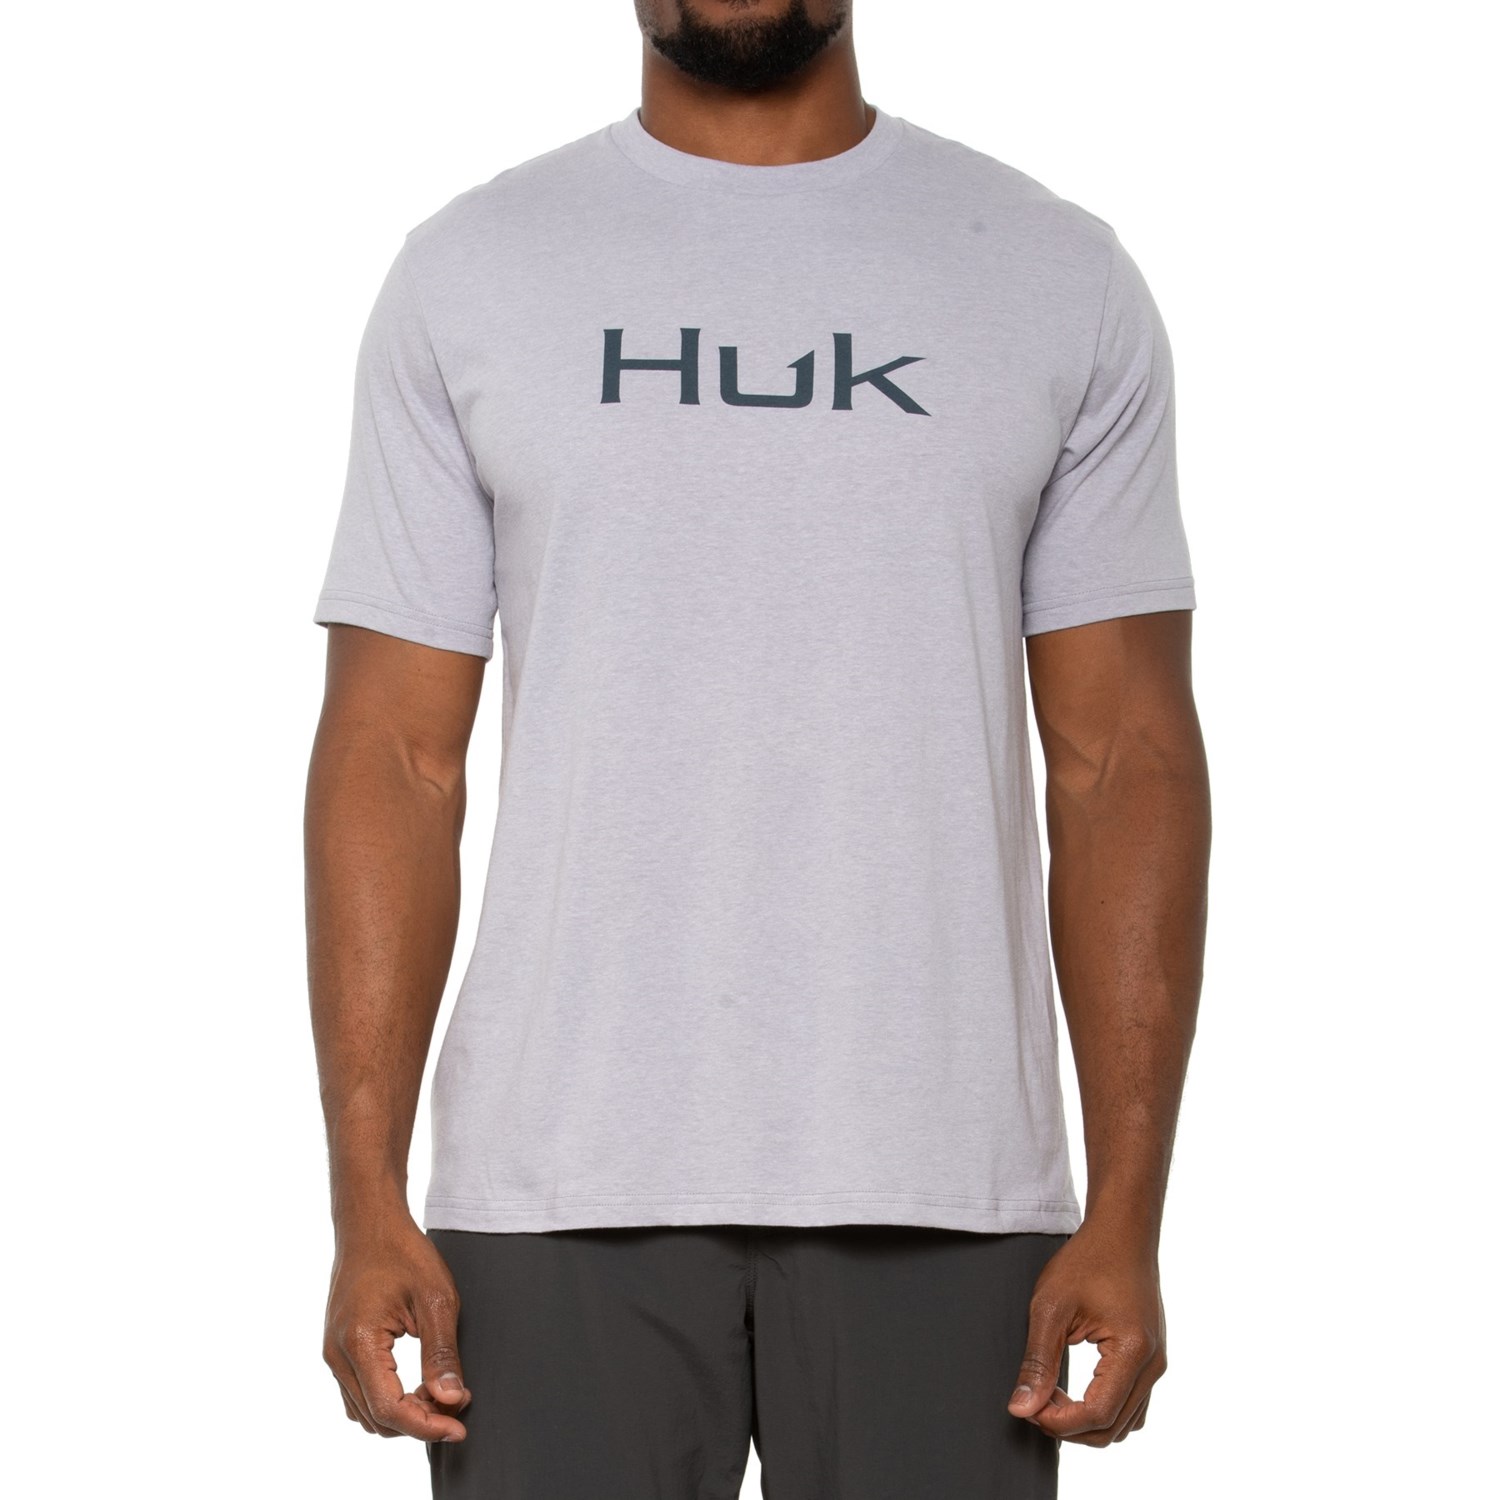 Huk Logo T-Shirt - Short Sleeve - Save 60%